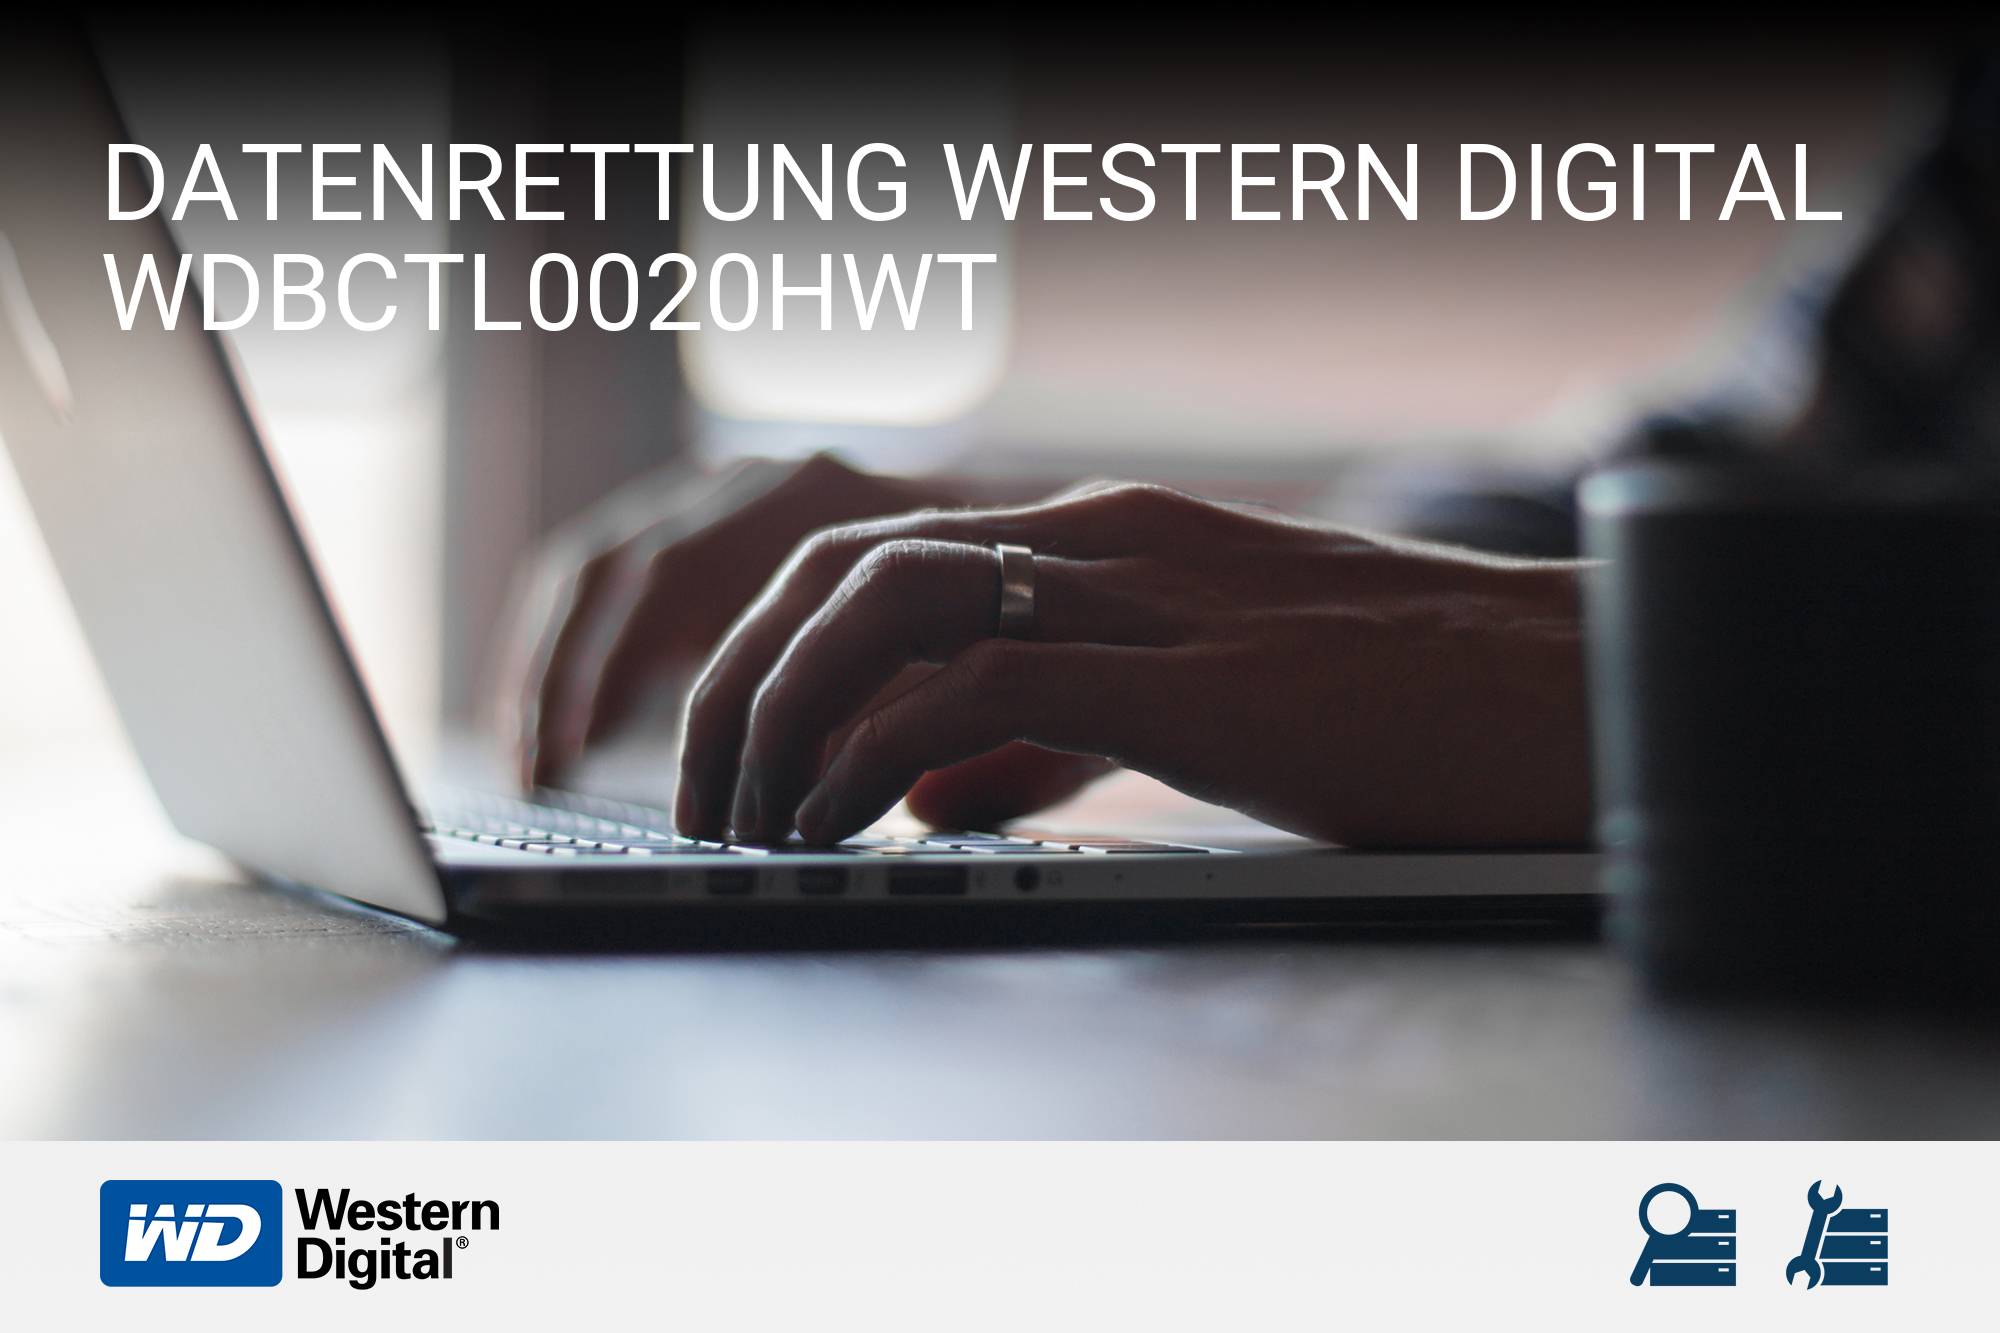 Western Digital WDBCTL0020HWT